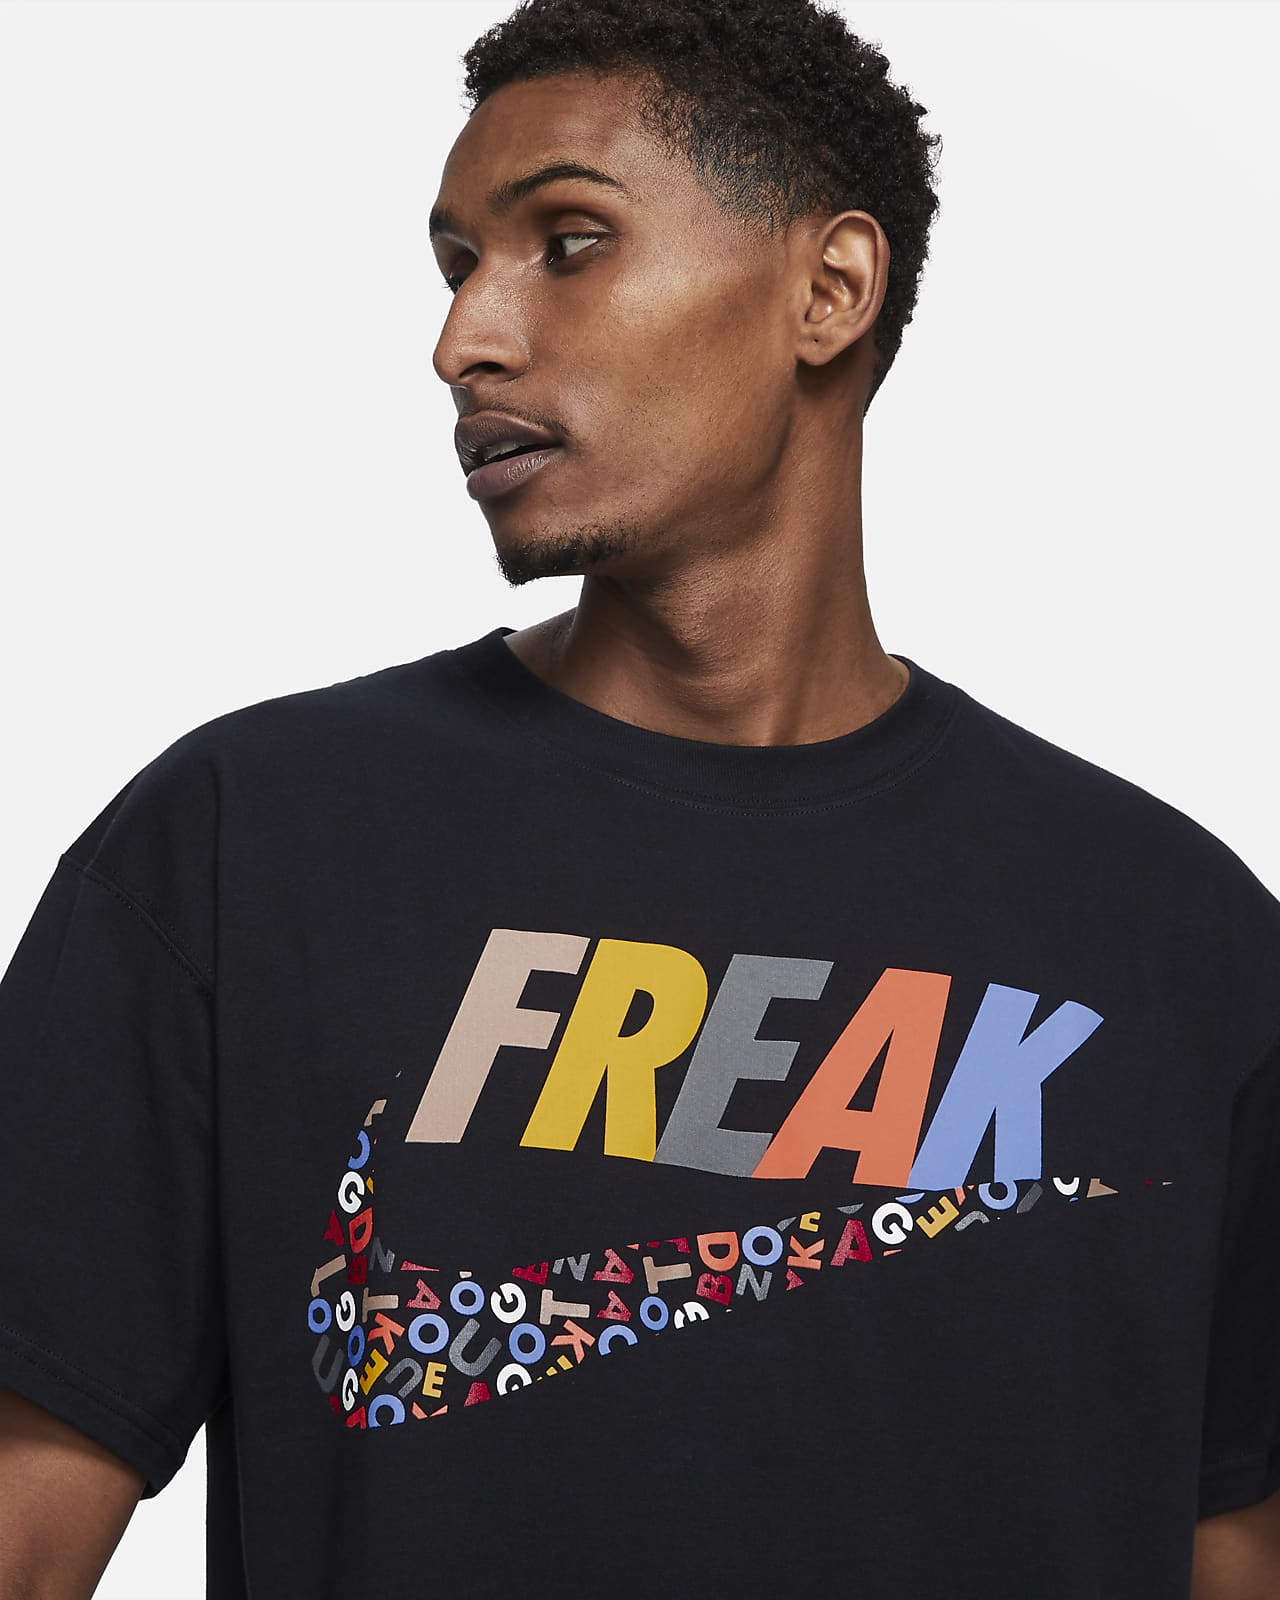 Nike Giannis freak Premium Basketball T-shirt in Black for Men